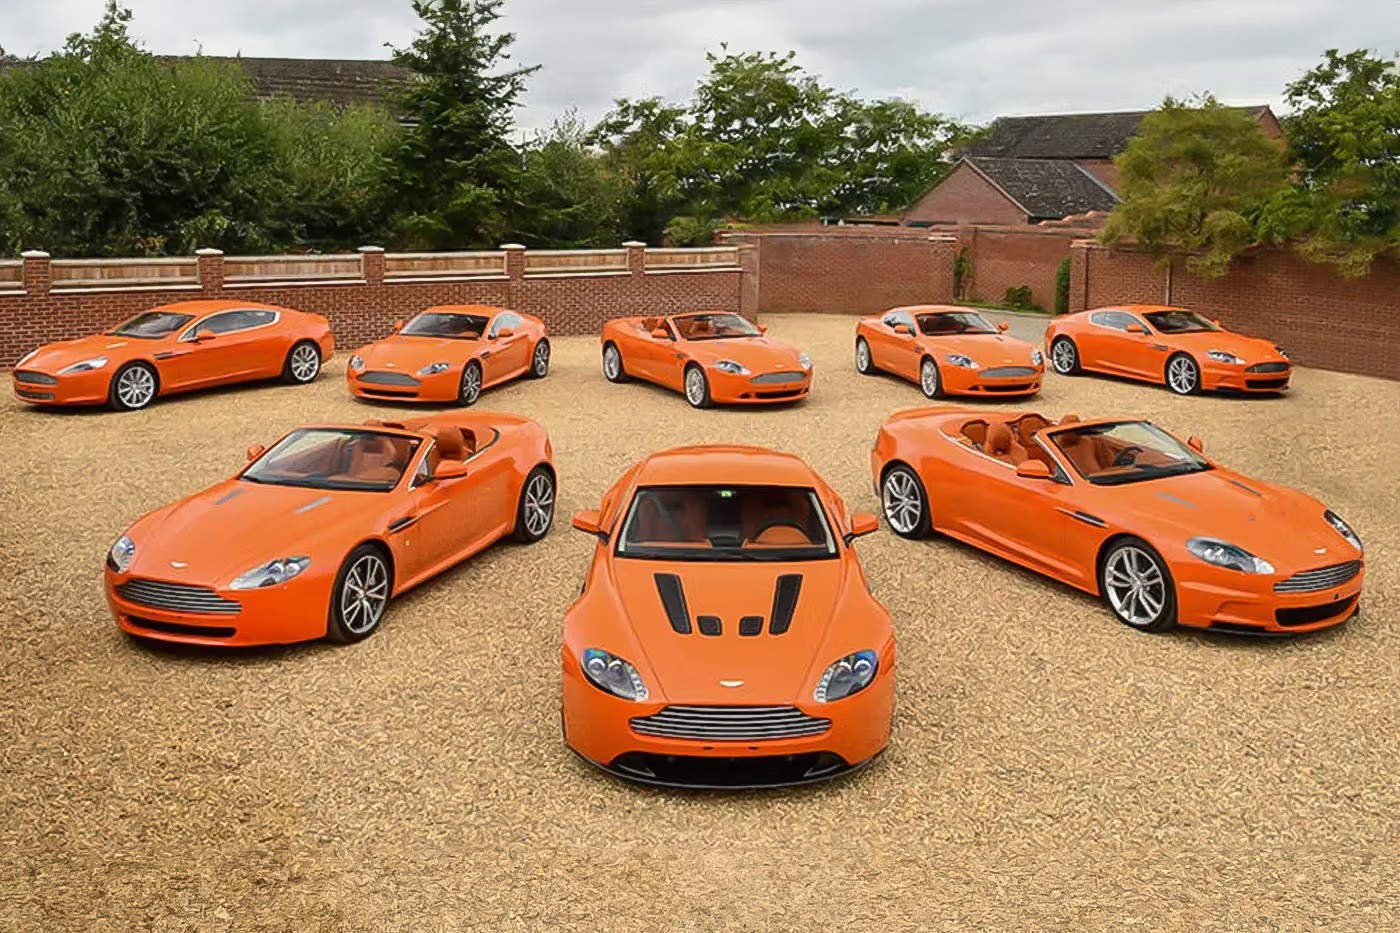 คอลเลกชัน Eight Orange 2010 Aston Martins กำลังมุ่งหน้าสู่การประมูล